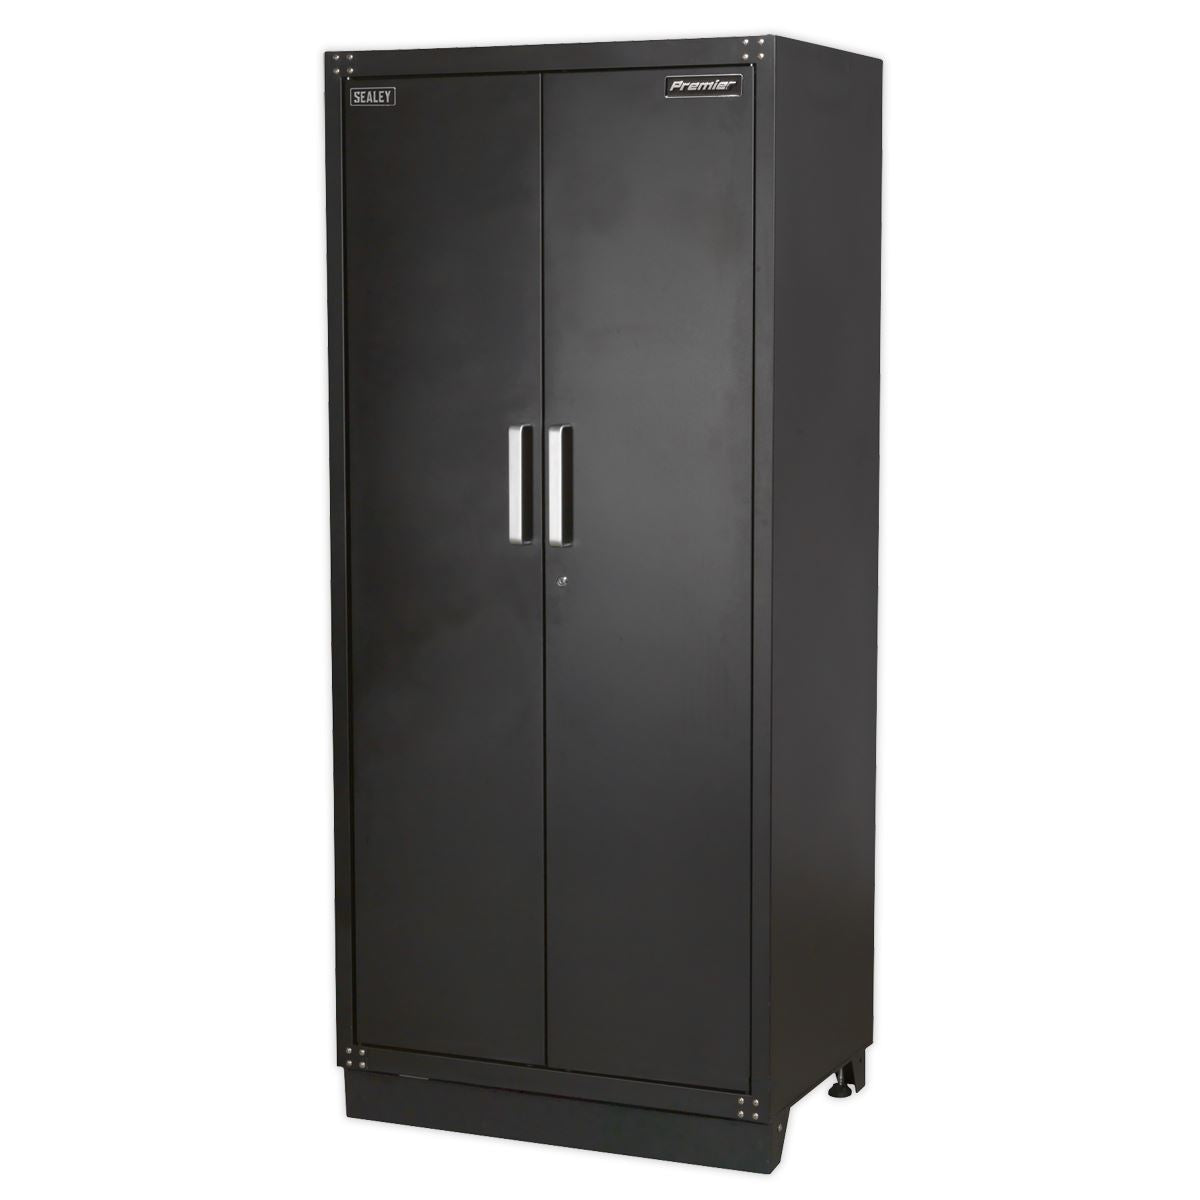 Sealey Premier Modular 2 Door Full Height Floor Cabinet 930mm Heavy-Duty